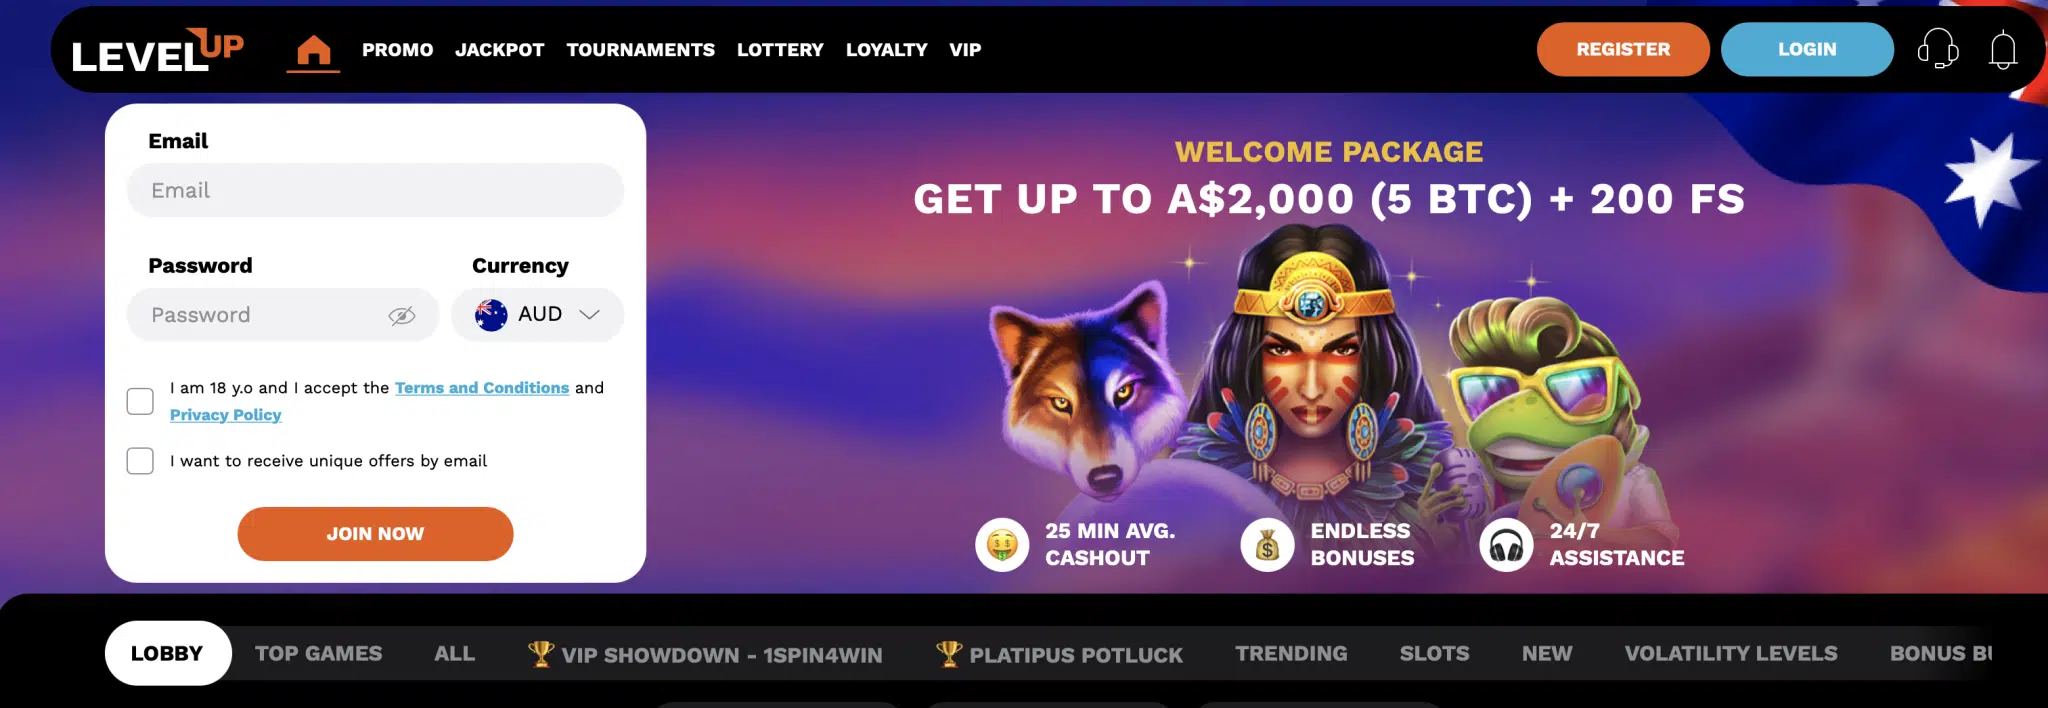 LevelUp casino formulär för att registrera sig samt bonus och spelkategorier syns på hemsidans bild